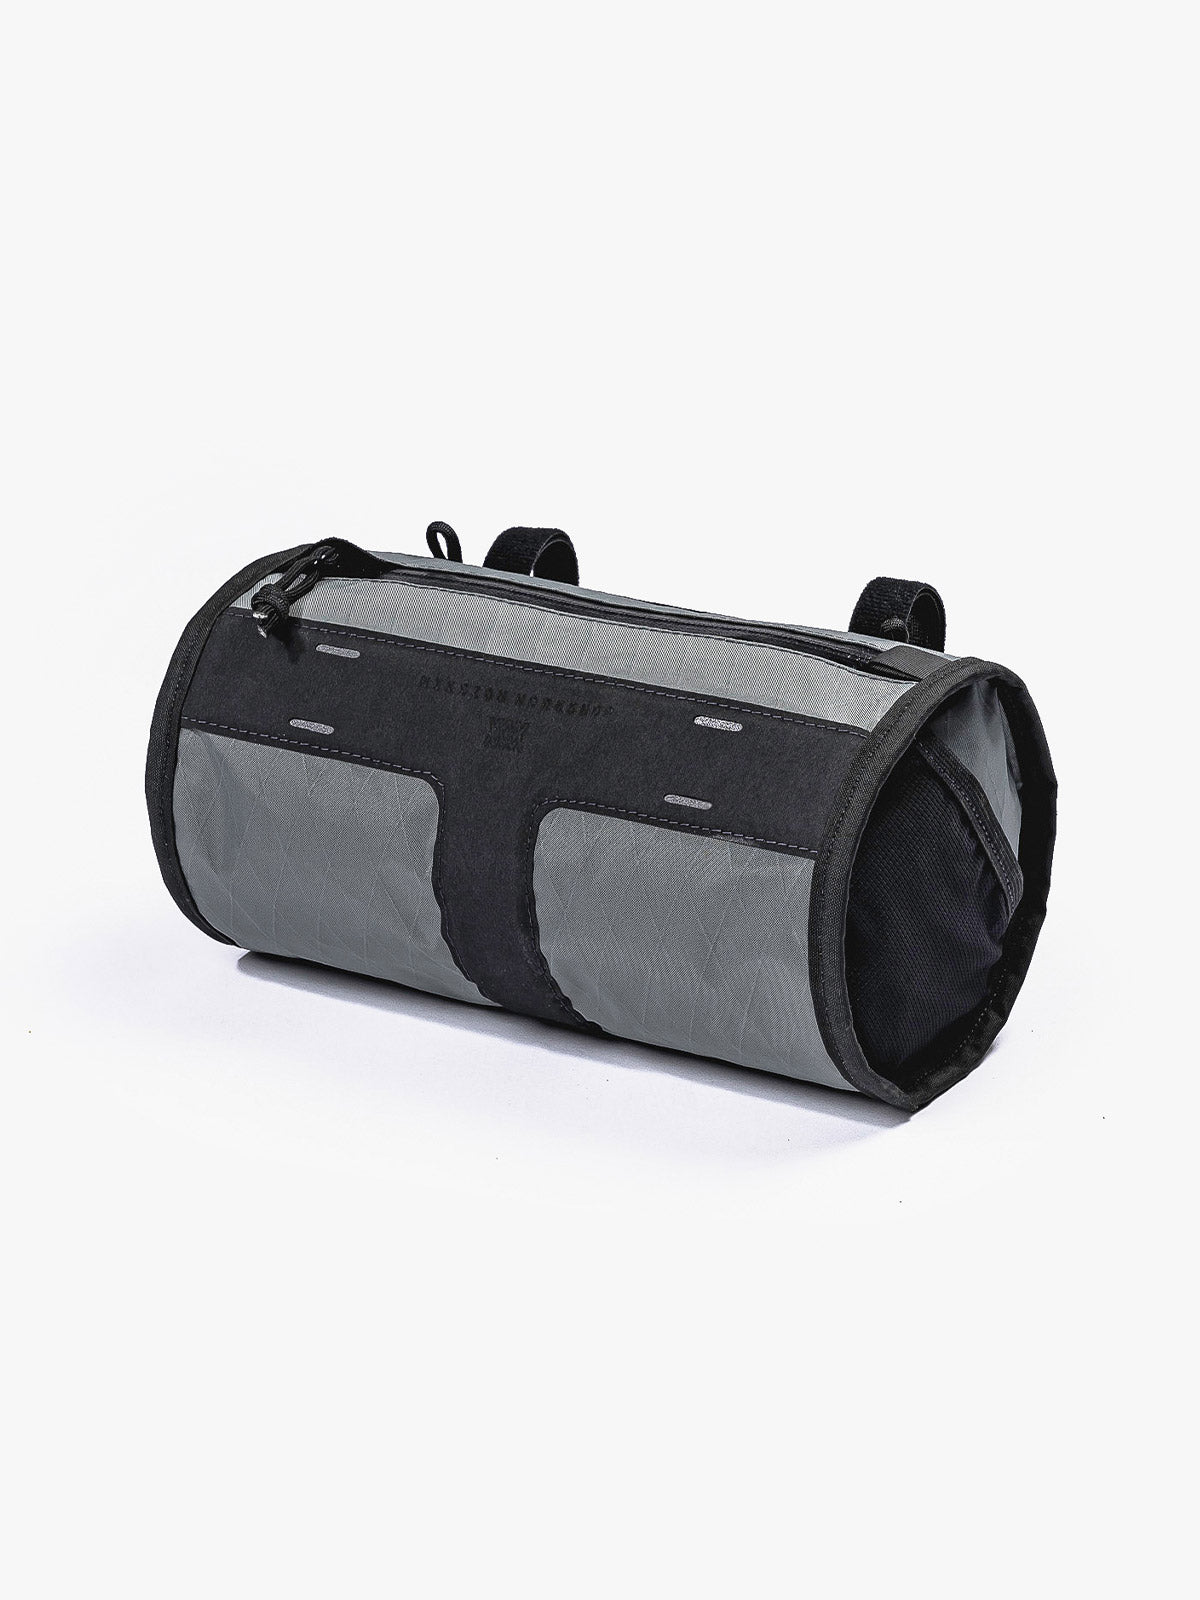 Toro Grande Handlebar Bag by Mission Workshop - Säänkestävät laukut ja tekniset vaatteet - San Francisco & Los Angeles - Rakennettu kestämään - ikuinen takuu